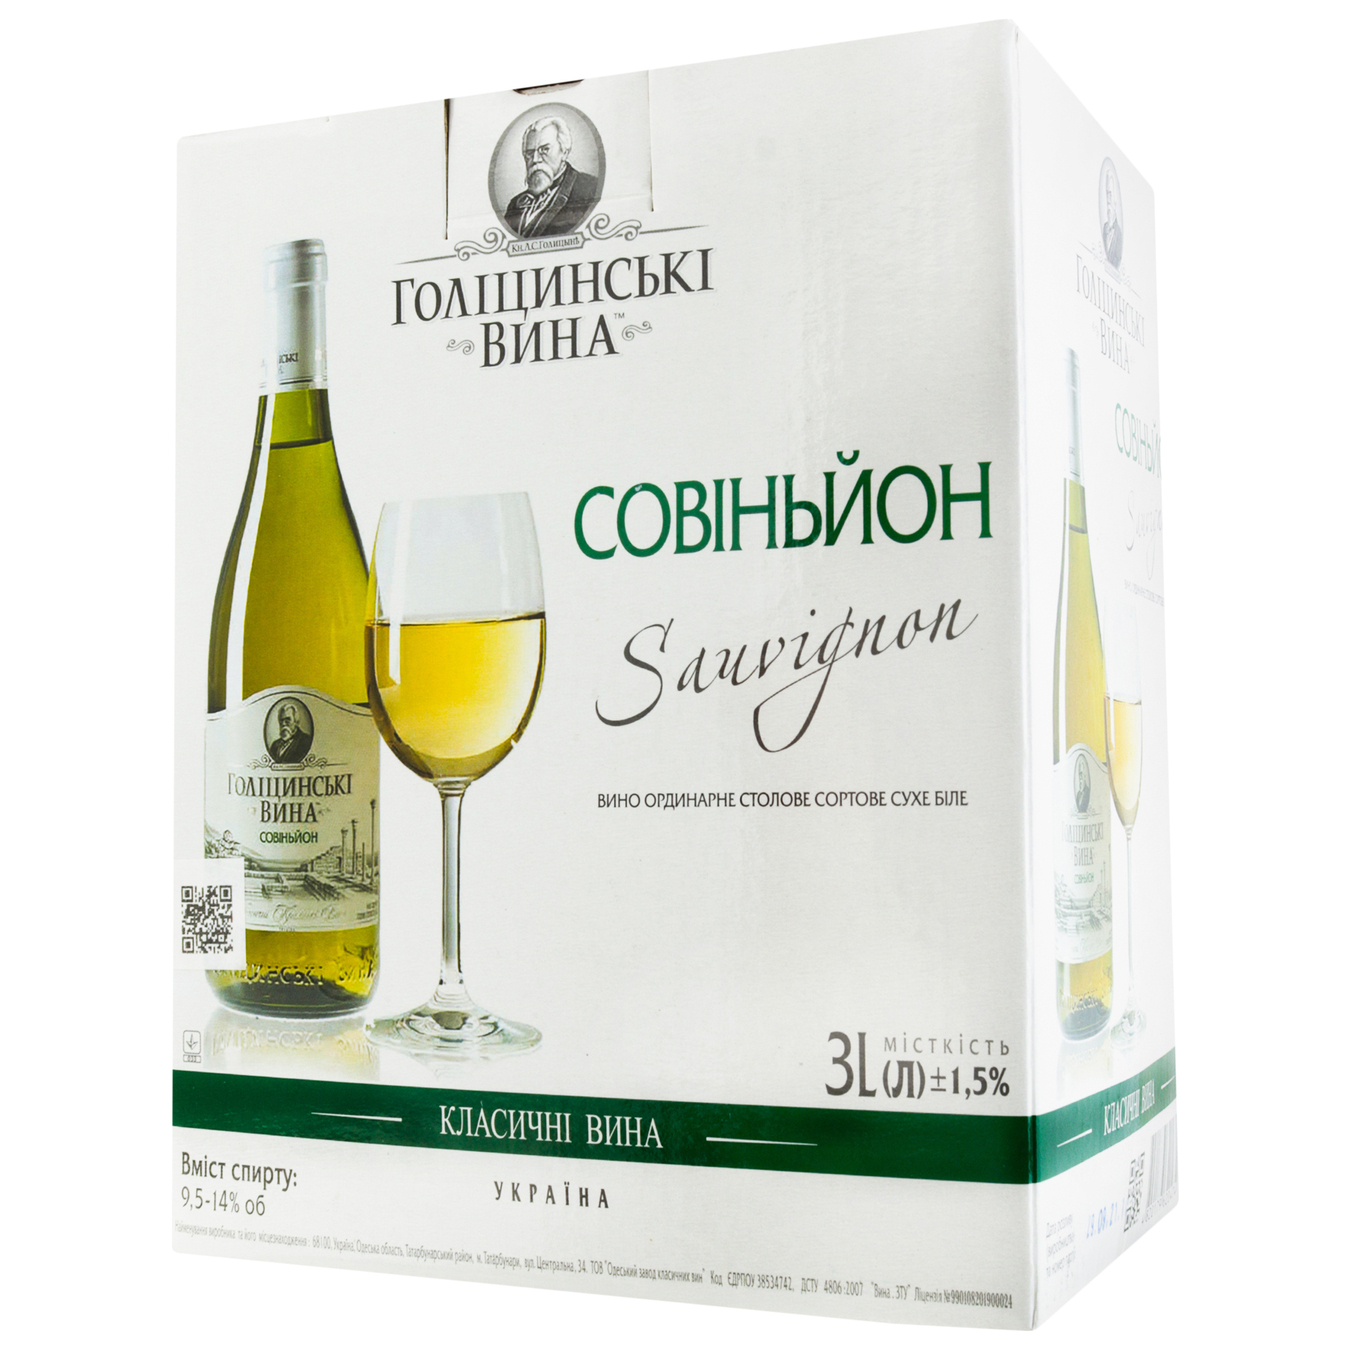 Вино Голицынские вина Совиньон белое сухое 9,5-14% 3л